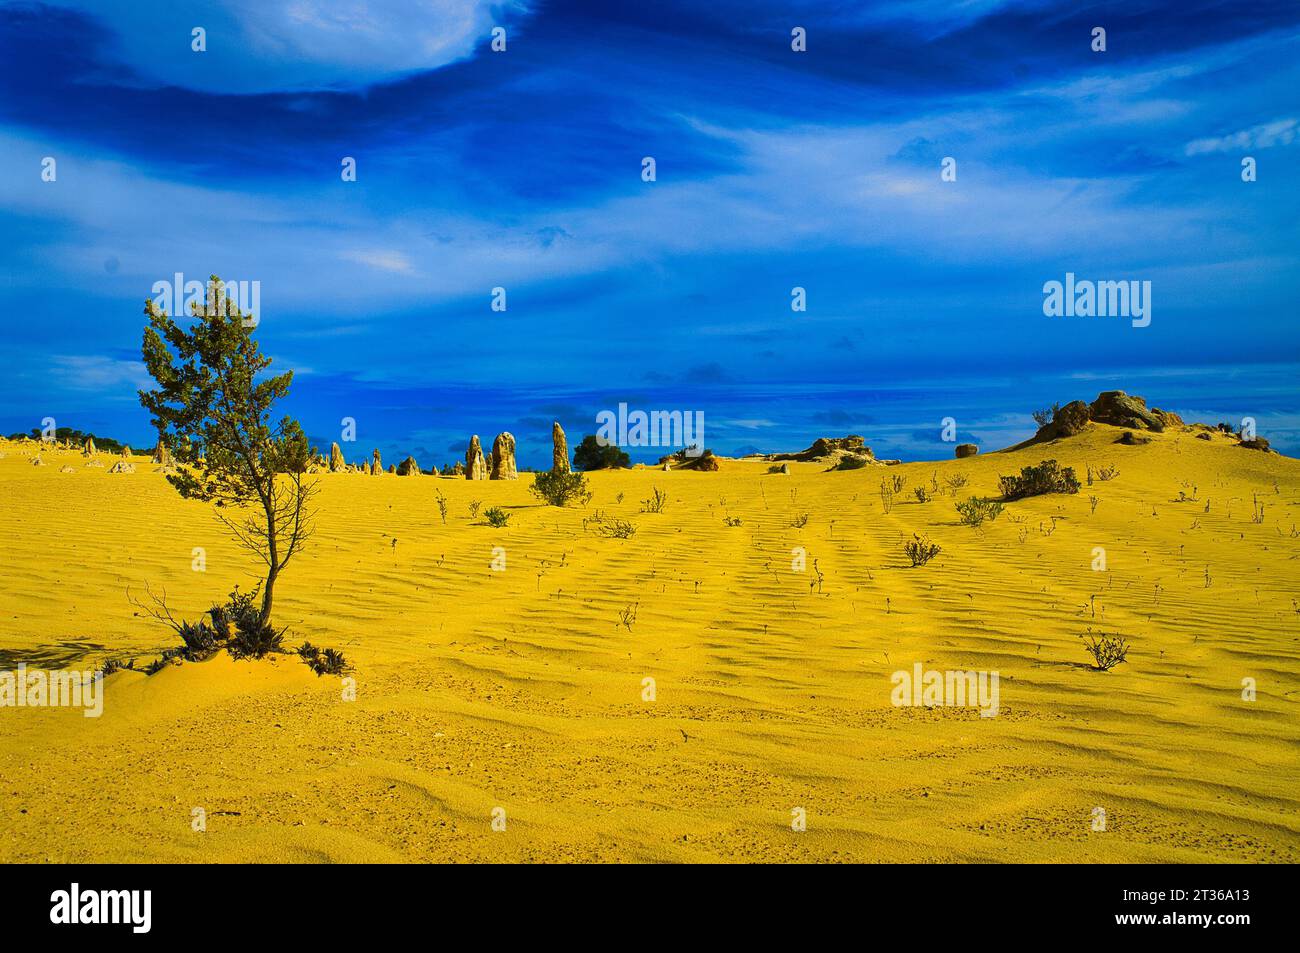 Paysage désertique surréaliste avec du sable côtelé jaune ocre, des rochers, des pinacles et un ciel bleu dur avec des nuages bispy Banque D'Images